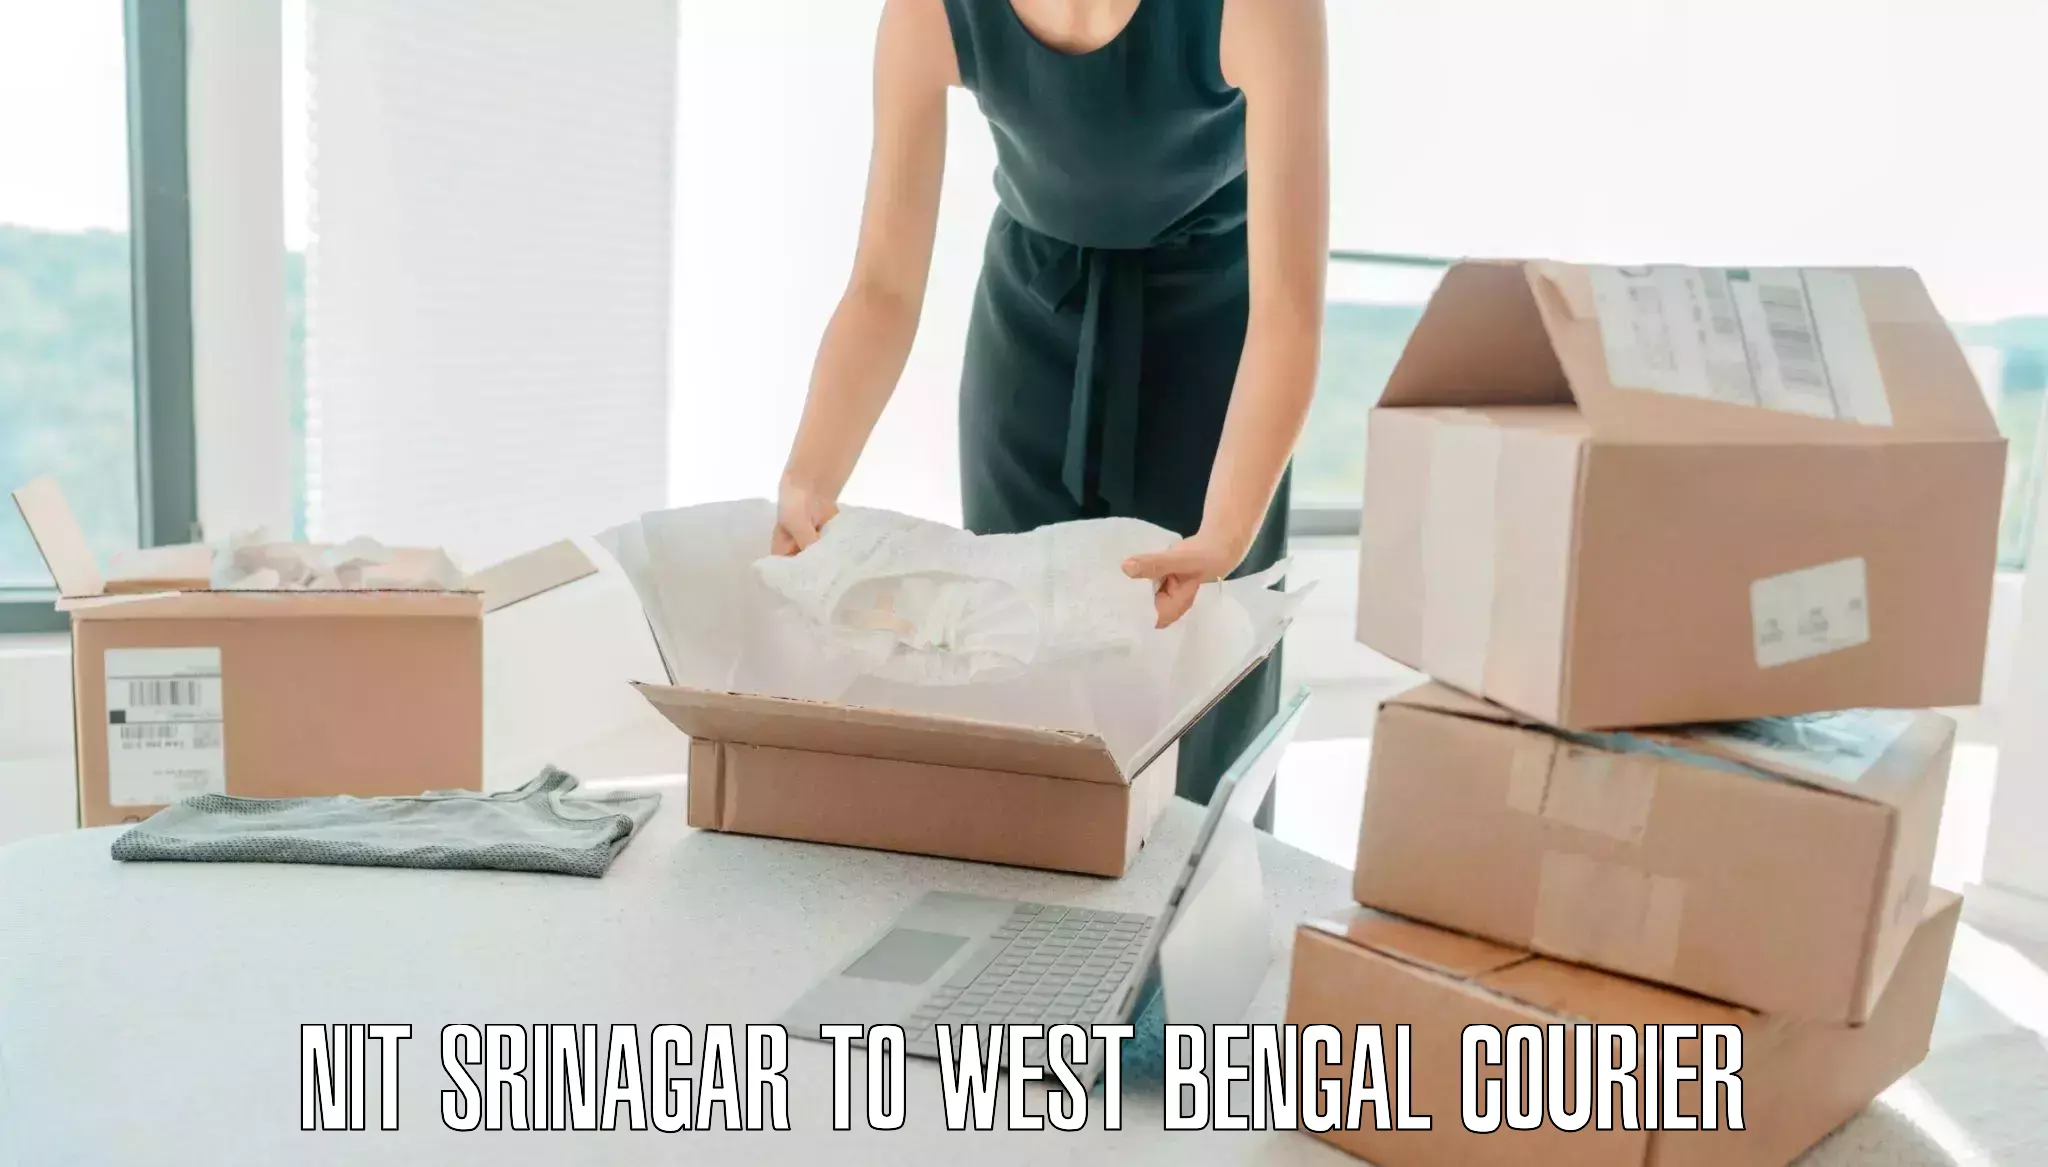 Baggage shipping advice NIT Srinagar to Balagarh